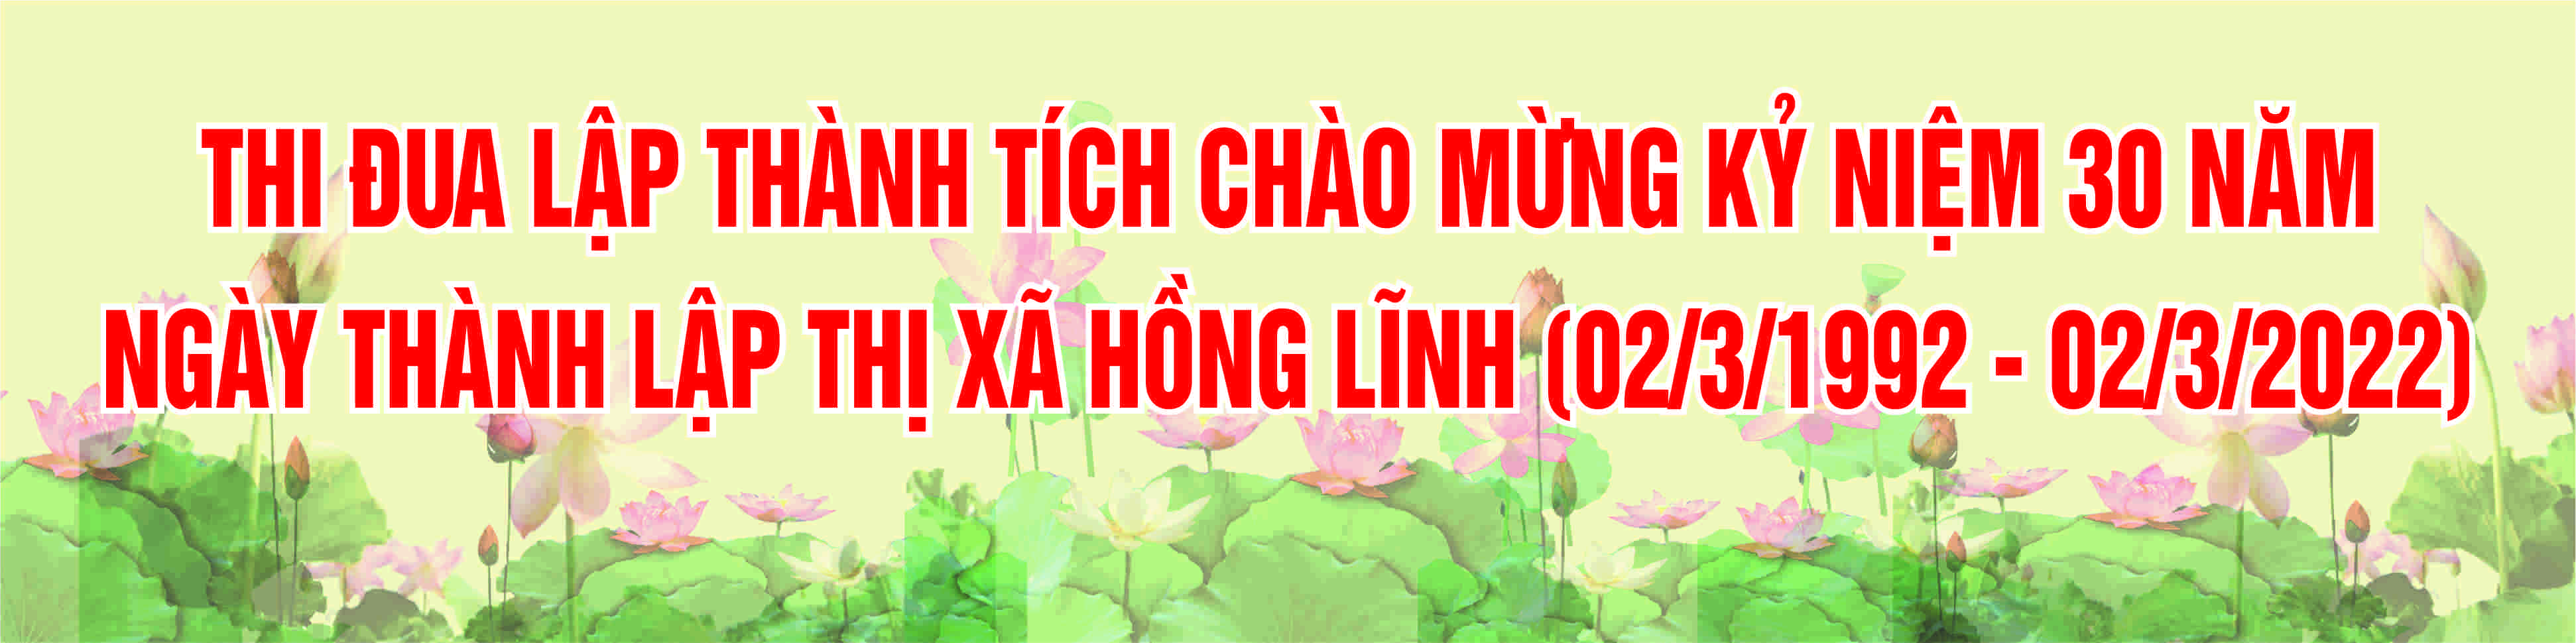 http://honglinh.hatinh.gov.vn/portal/KenhTin/-455130.aspx